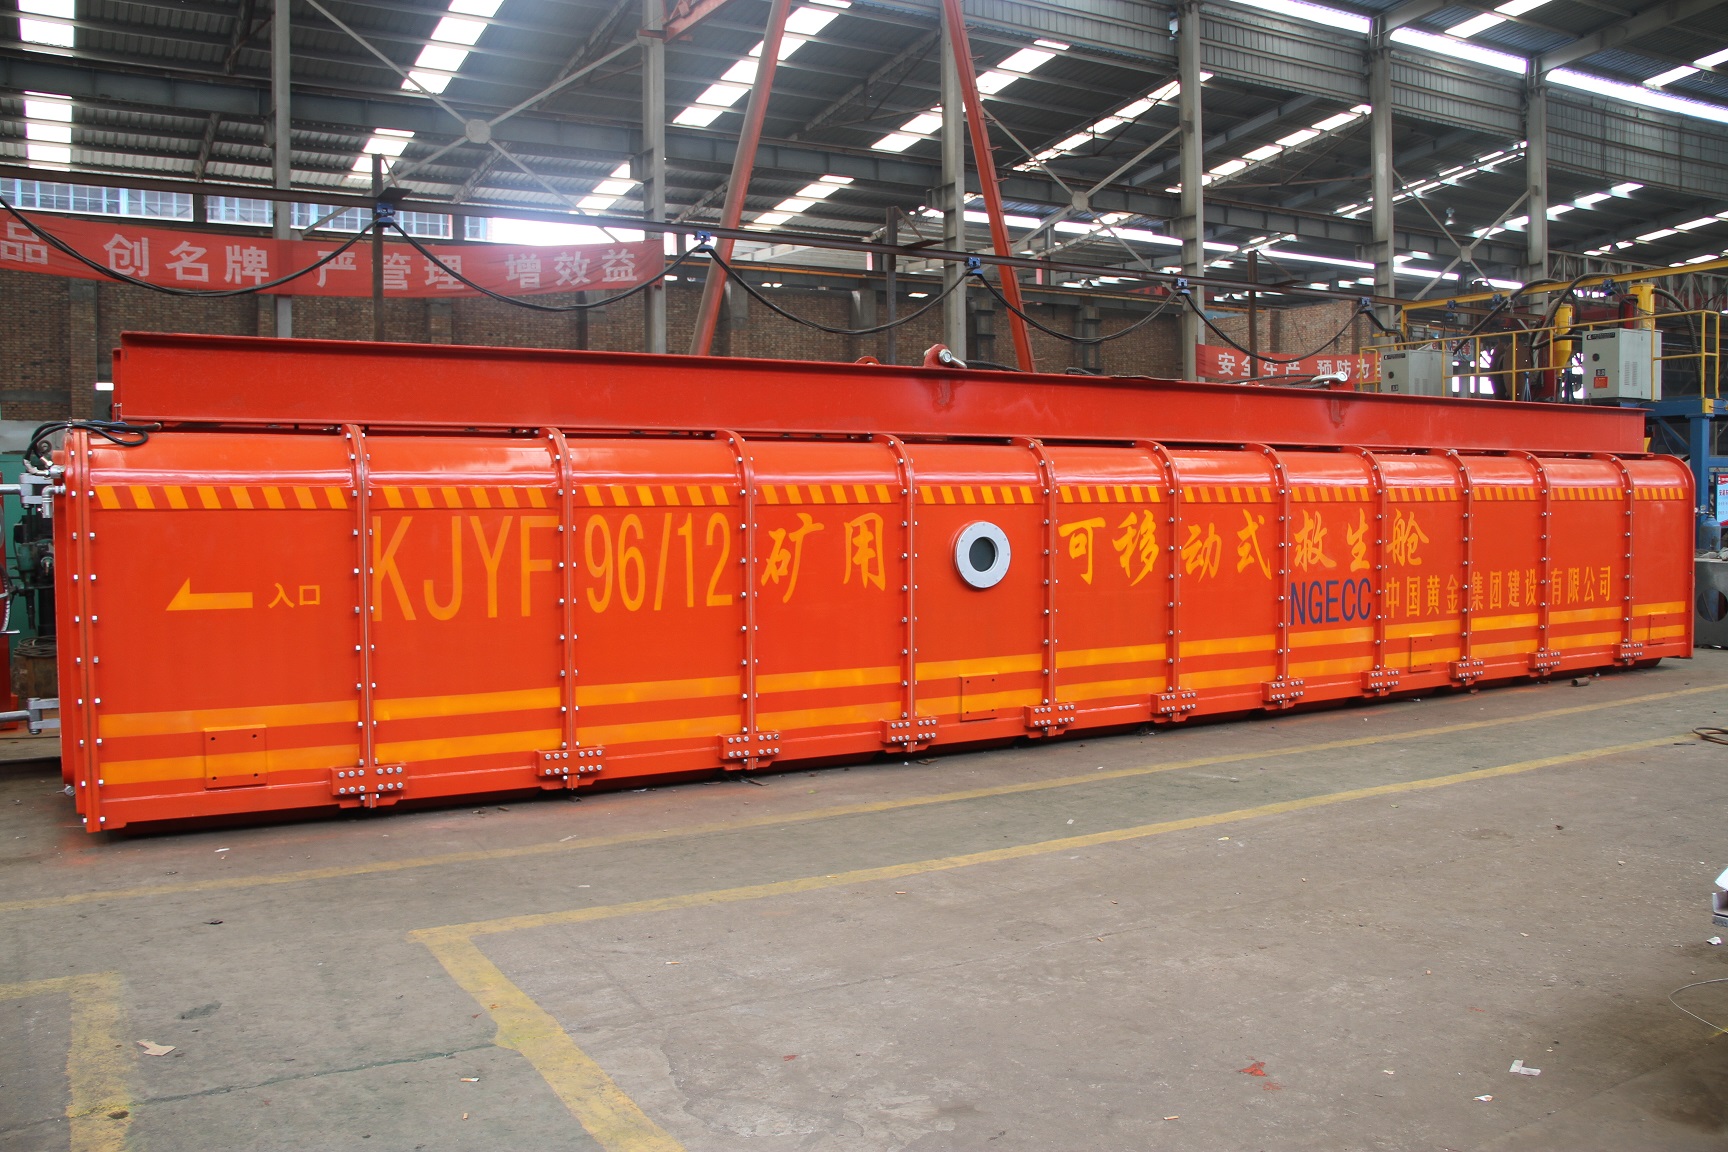 KJYF-96-12矿用可移动式救生舱